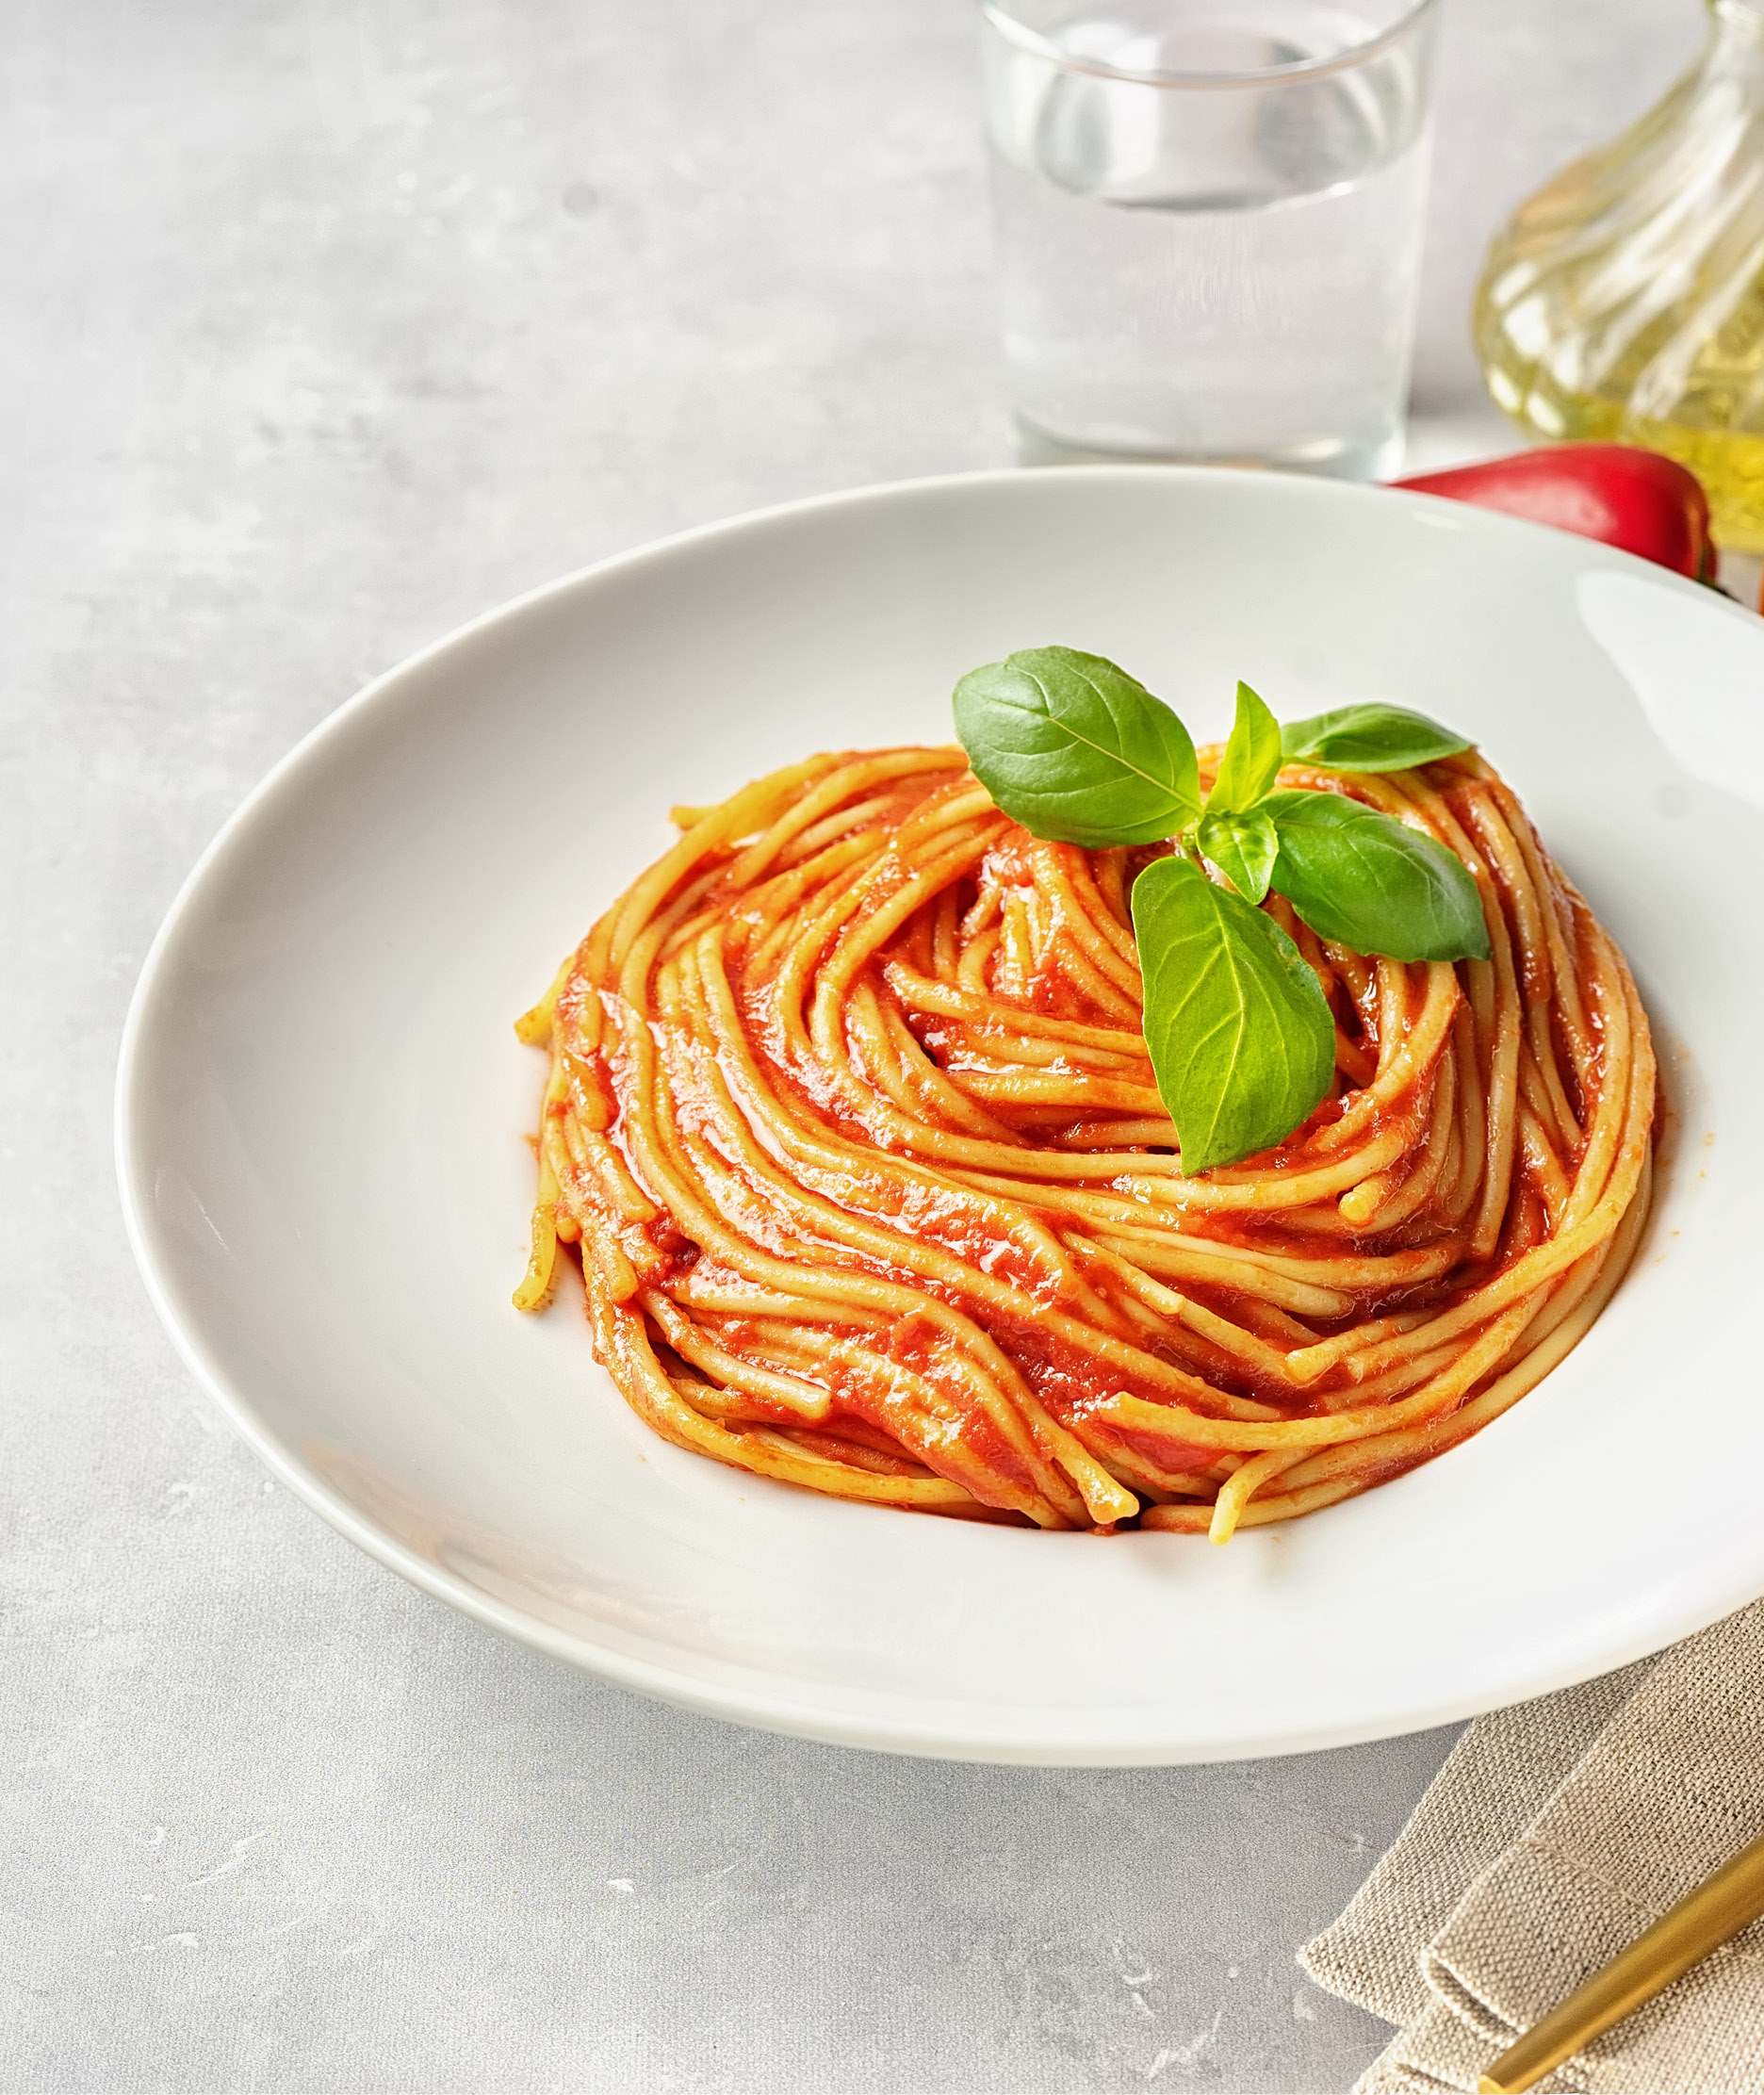 spaghetti con salsa piccantella pasta & bruschetta e basilico, olio extra-vergine di oliva